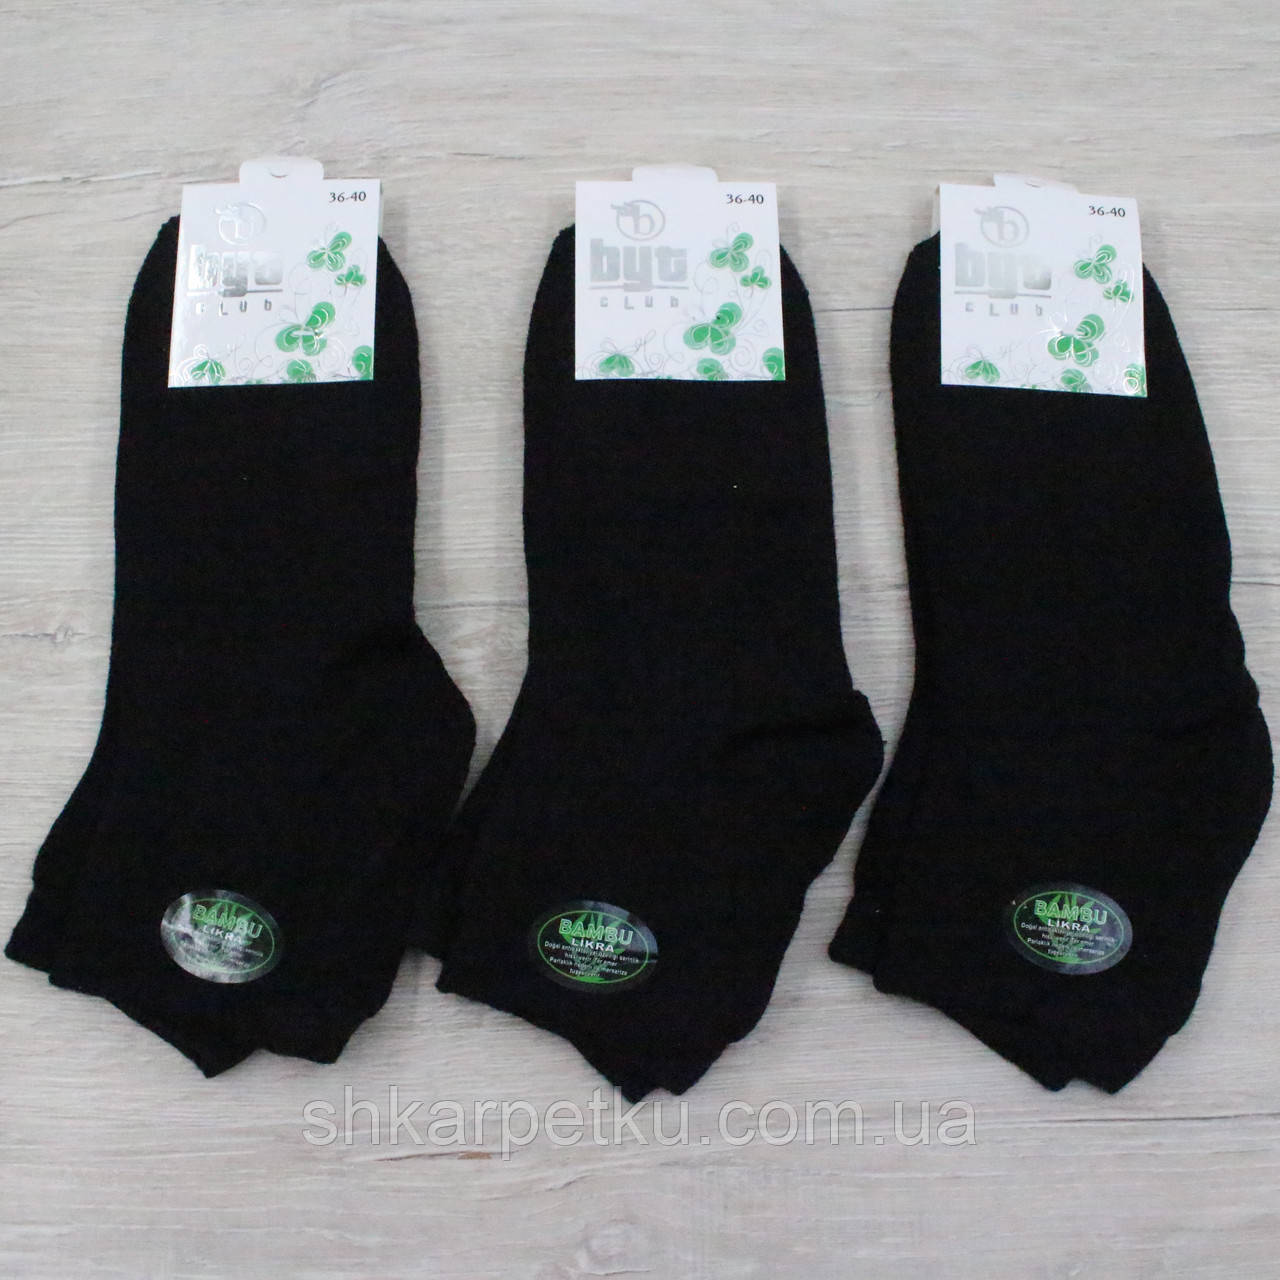 Жіночі середні шкарпетки махрові бамбук BYT clab,  однотонні 36-40, 12 пар/уп,  чорні